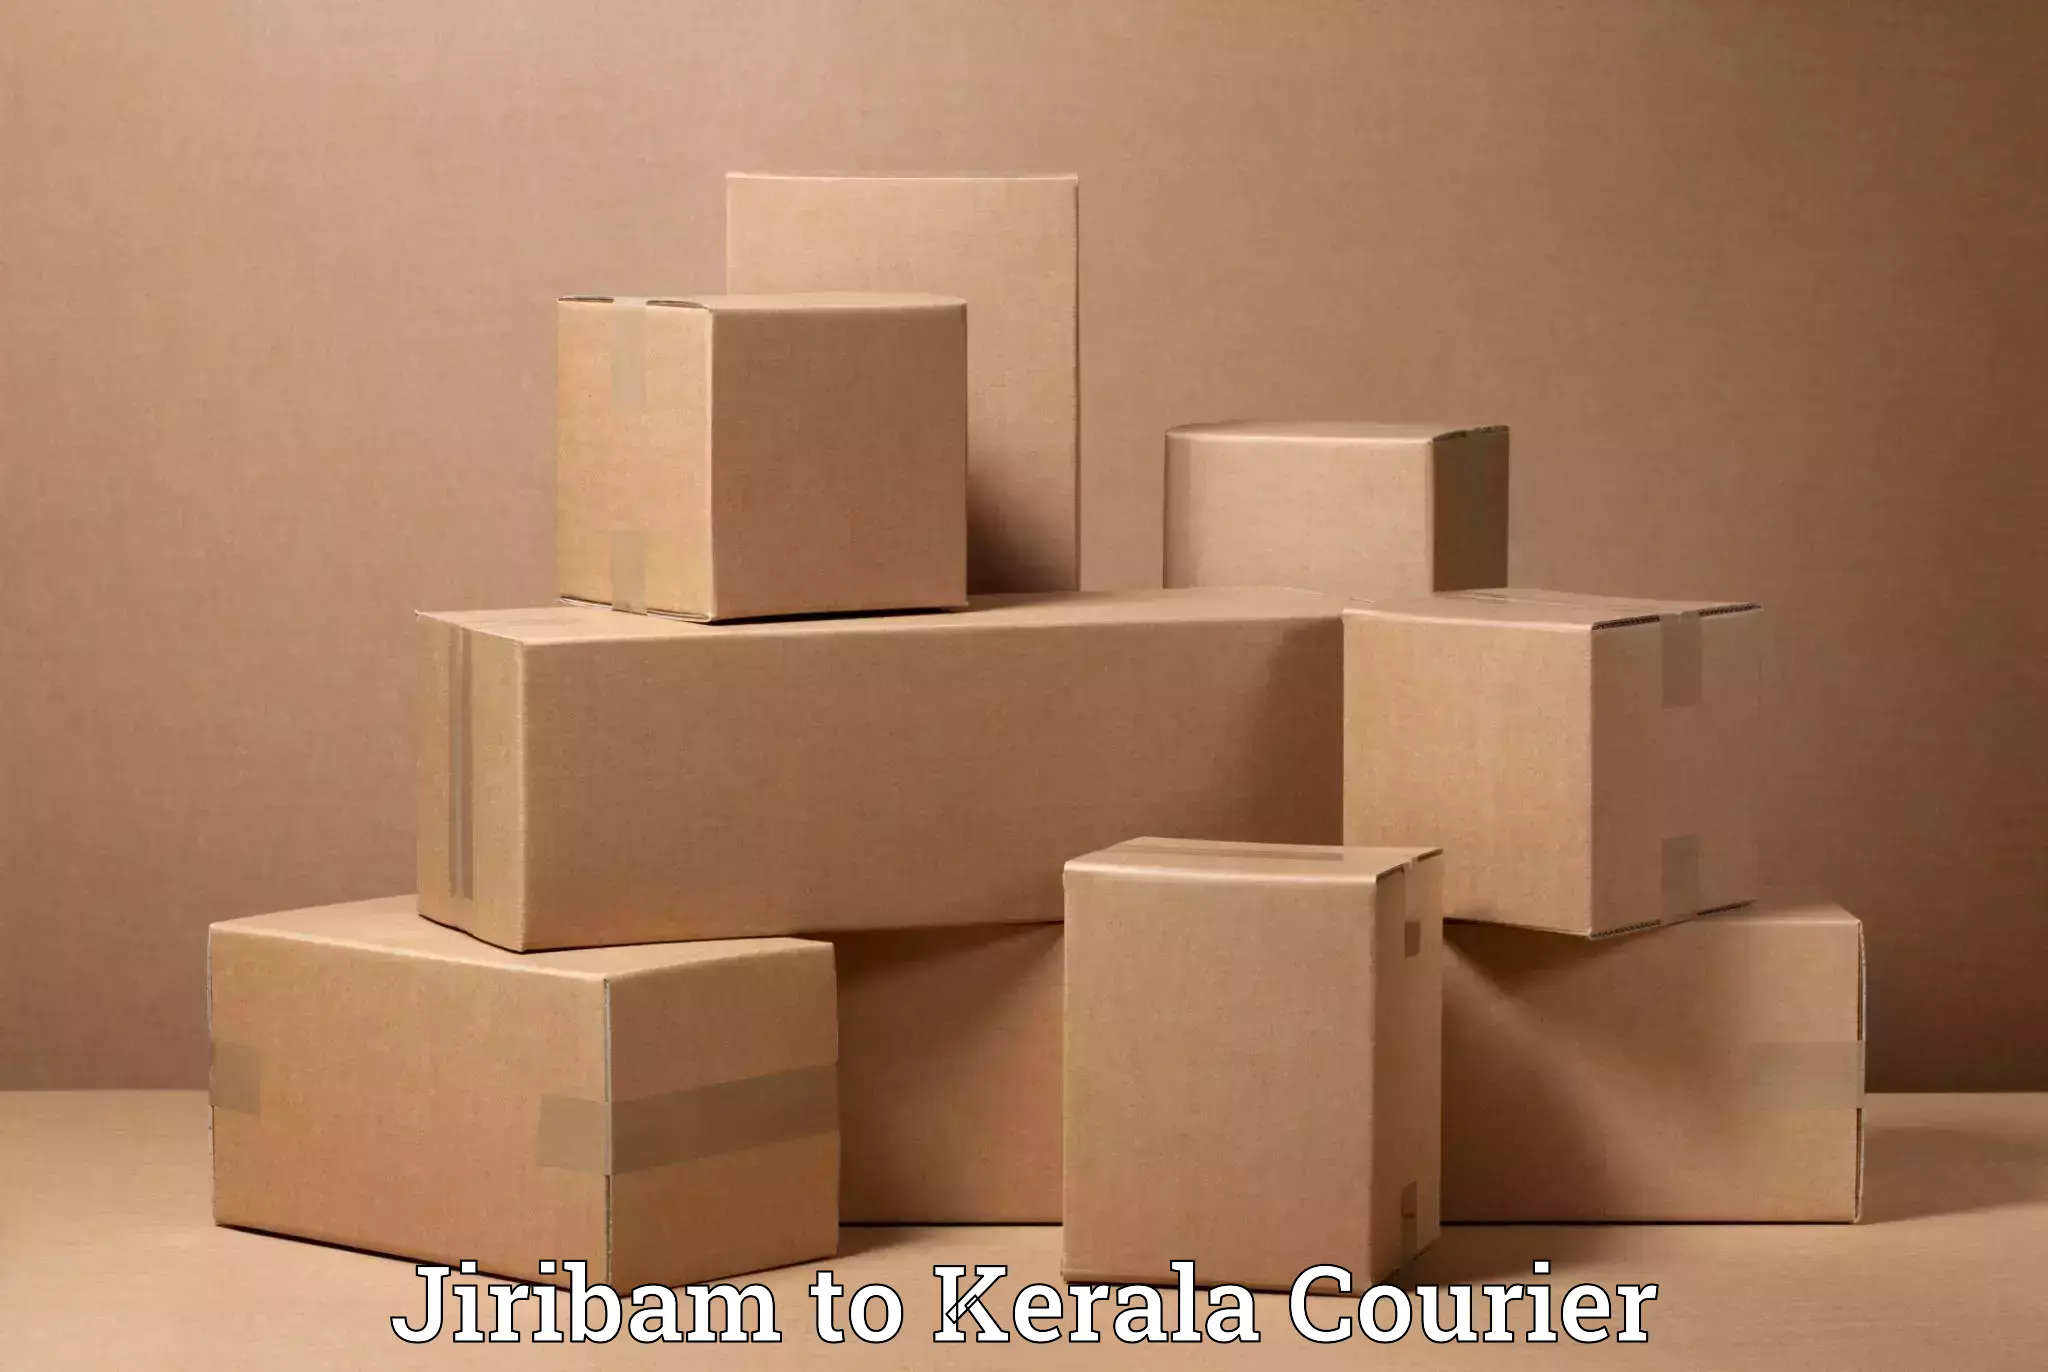 Skilled furniture movers Jiribam to Thiruvananthapuram